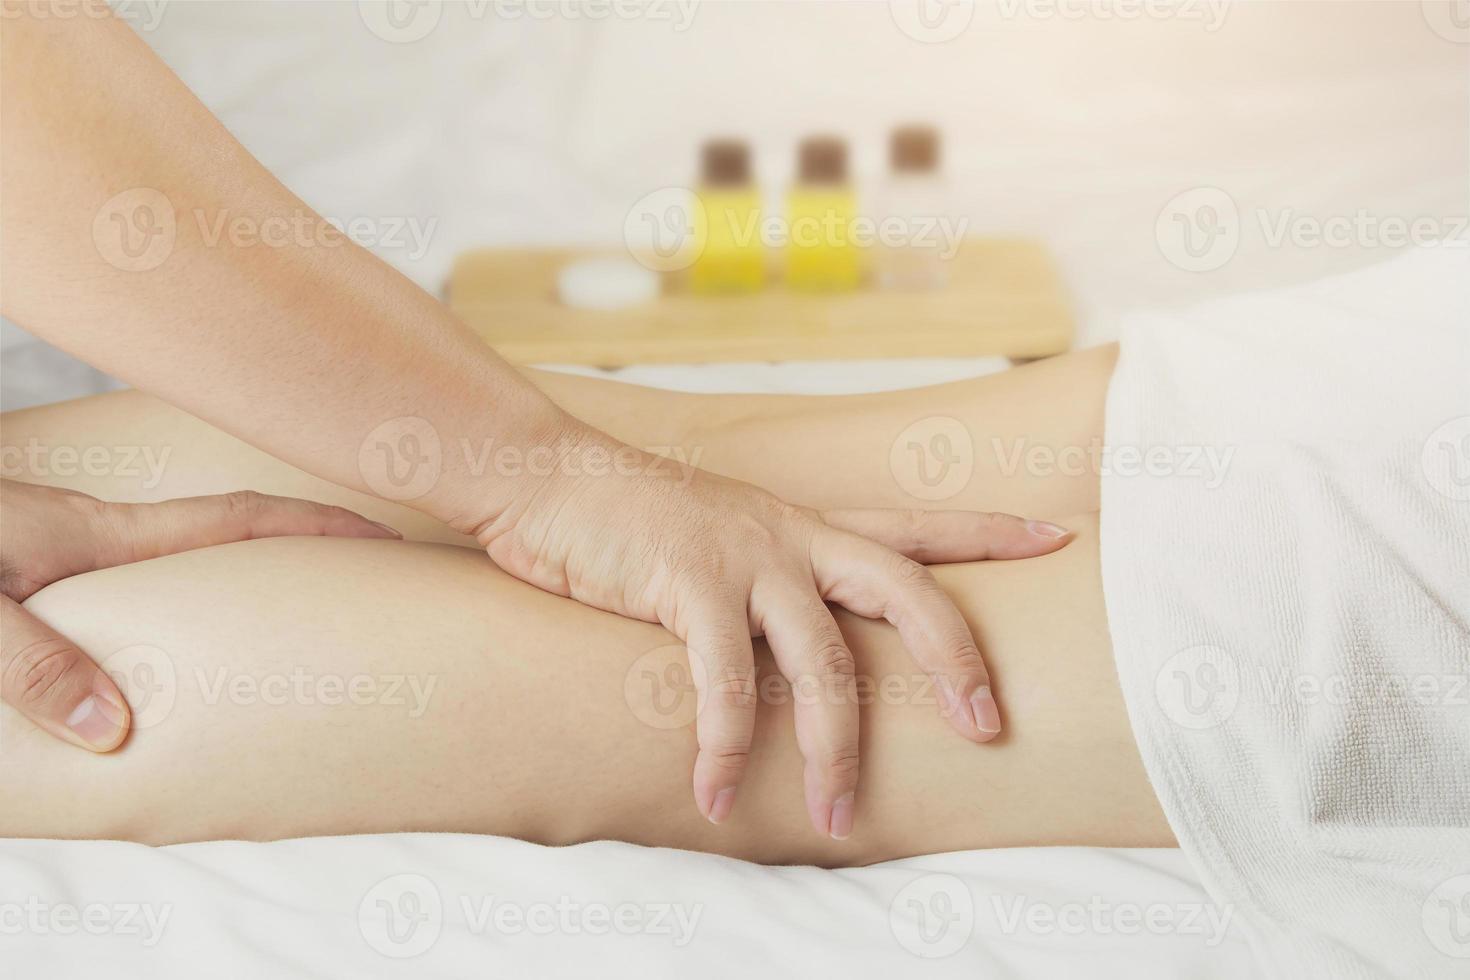 la mano del masajista masajea los músculos de la pantorrilla de la mujer joven en el salón de spa. concepto de salud, relajación o uso de productos naturales para cuidar la piel de las piernas foto